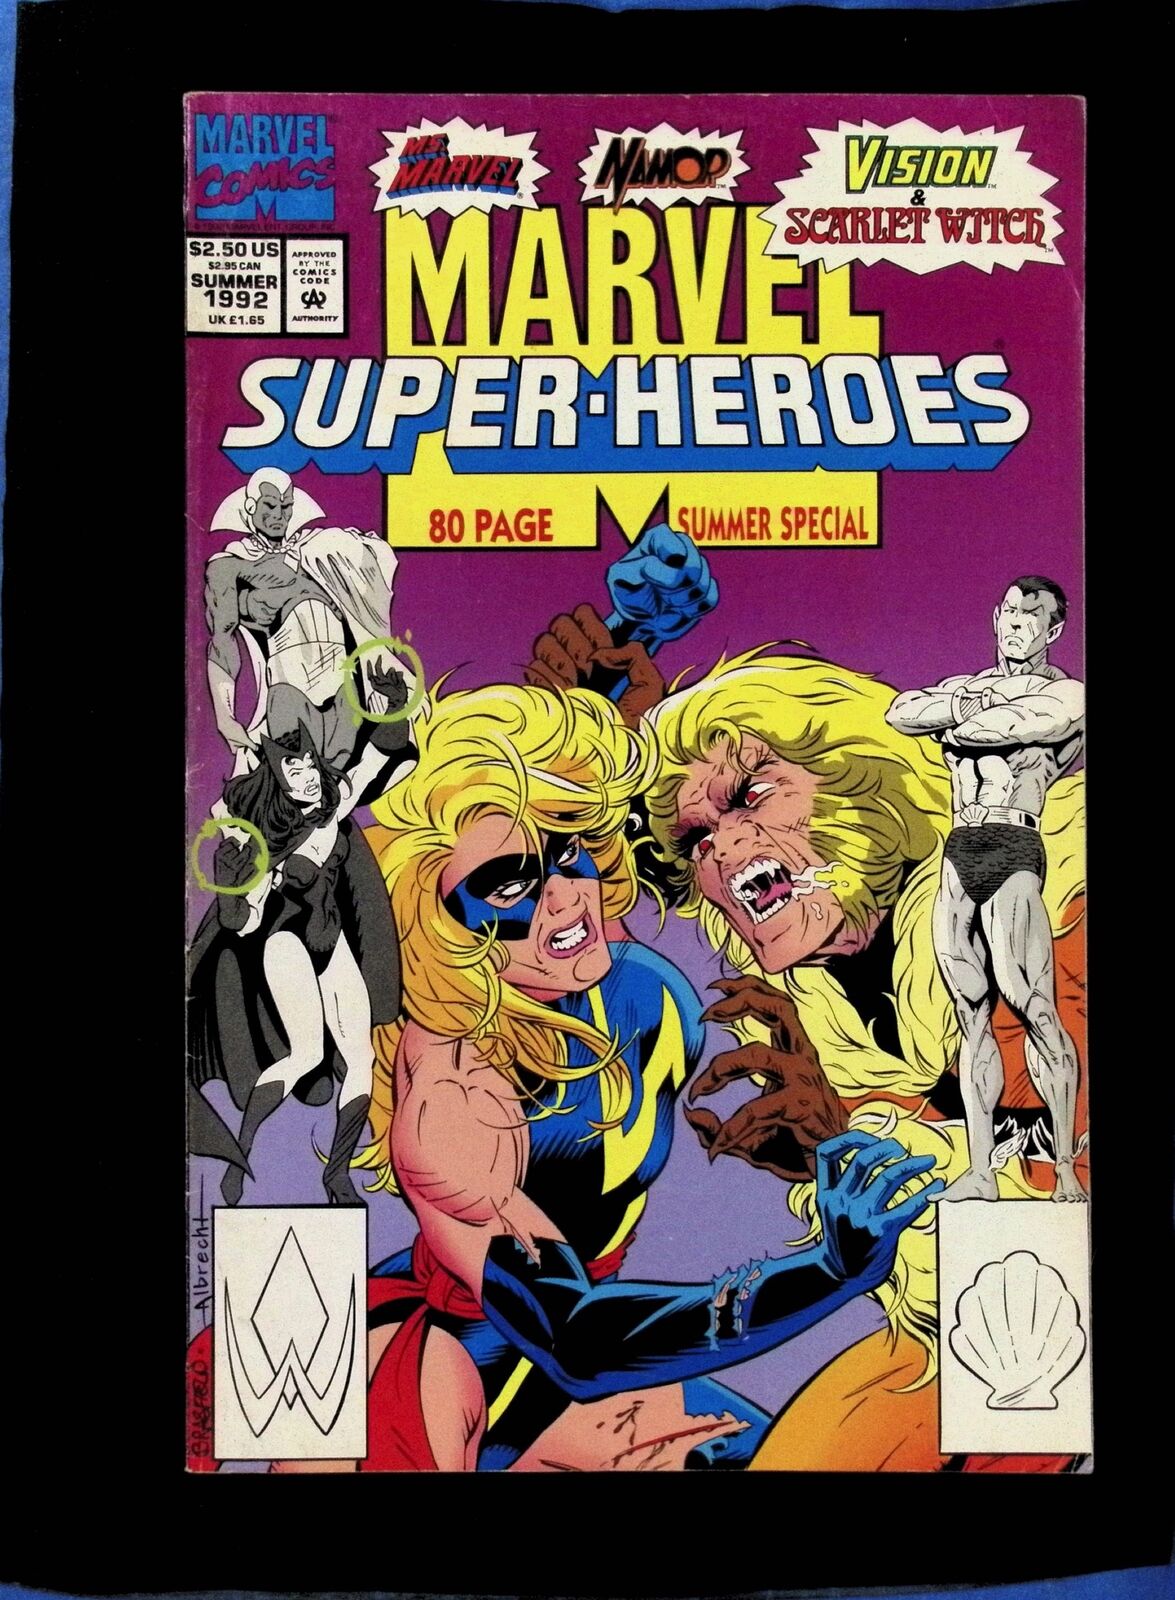 Marvel Super-Heroes, Vol. 2 10A -